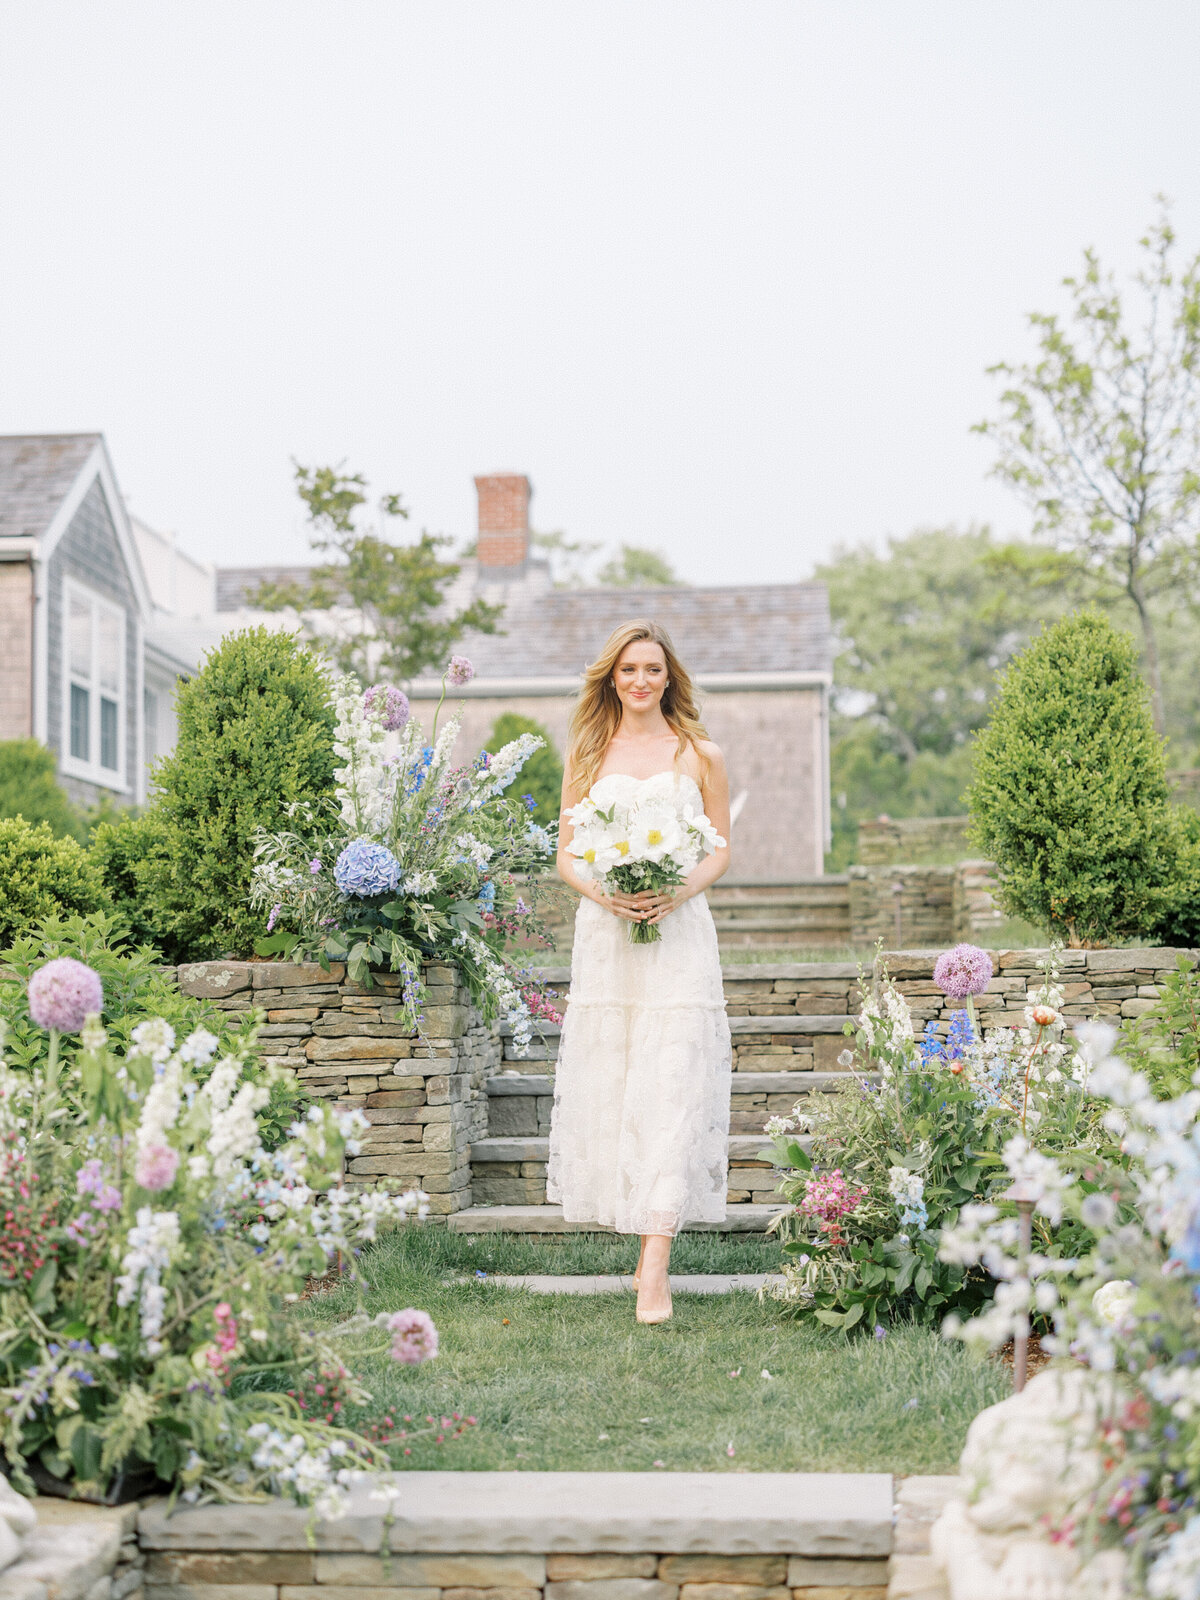 Lauren-Baker-Photography-Nantucket-Wedding-Editorial-34